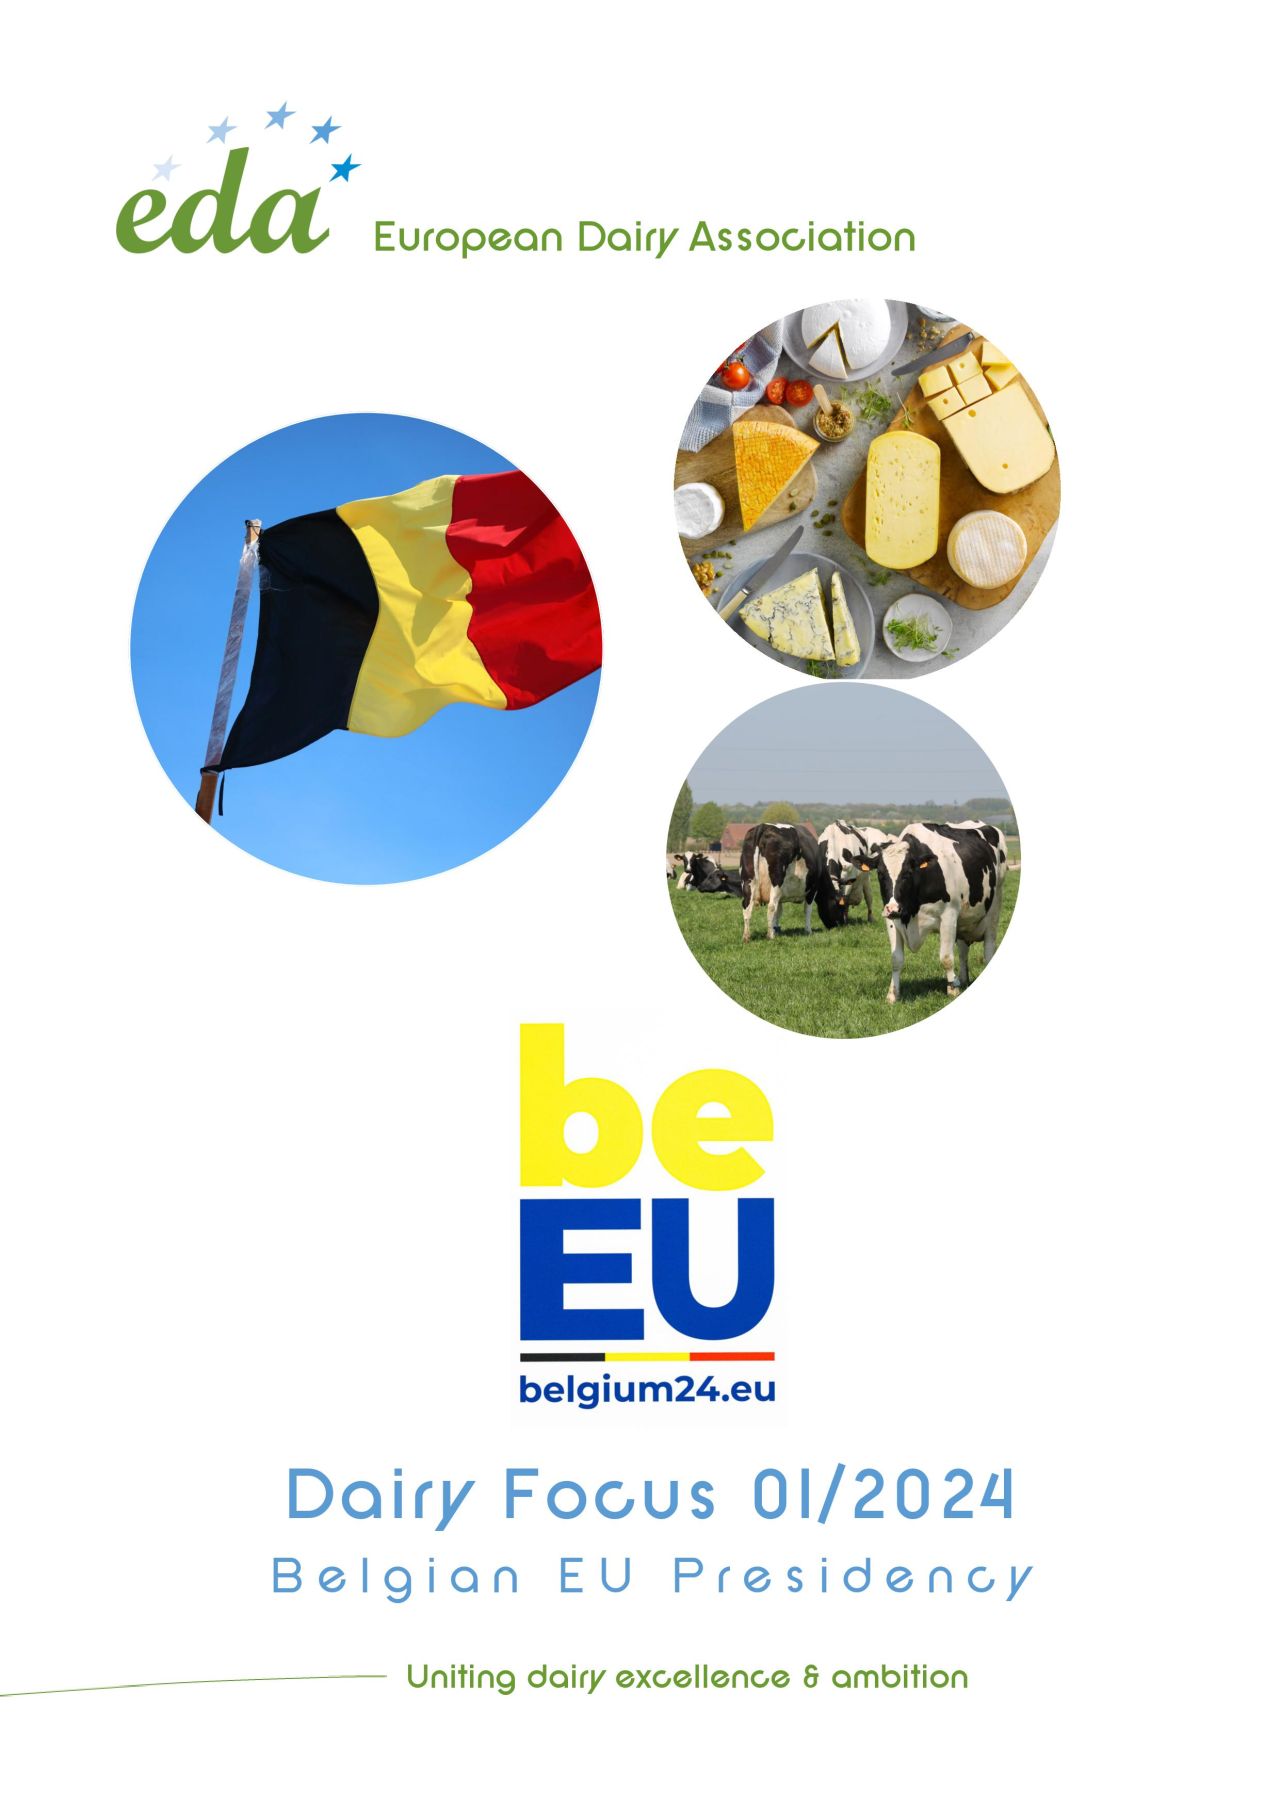 EDA Dairy Focus sur la présidence belge du Conseil européen